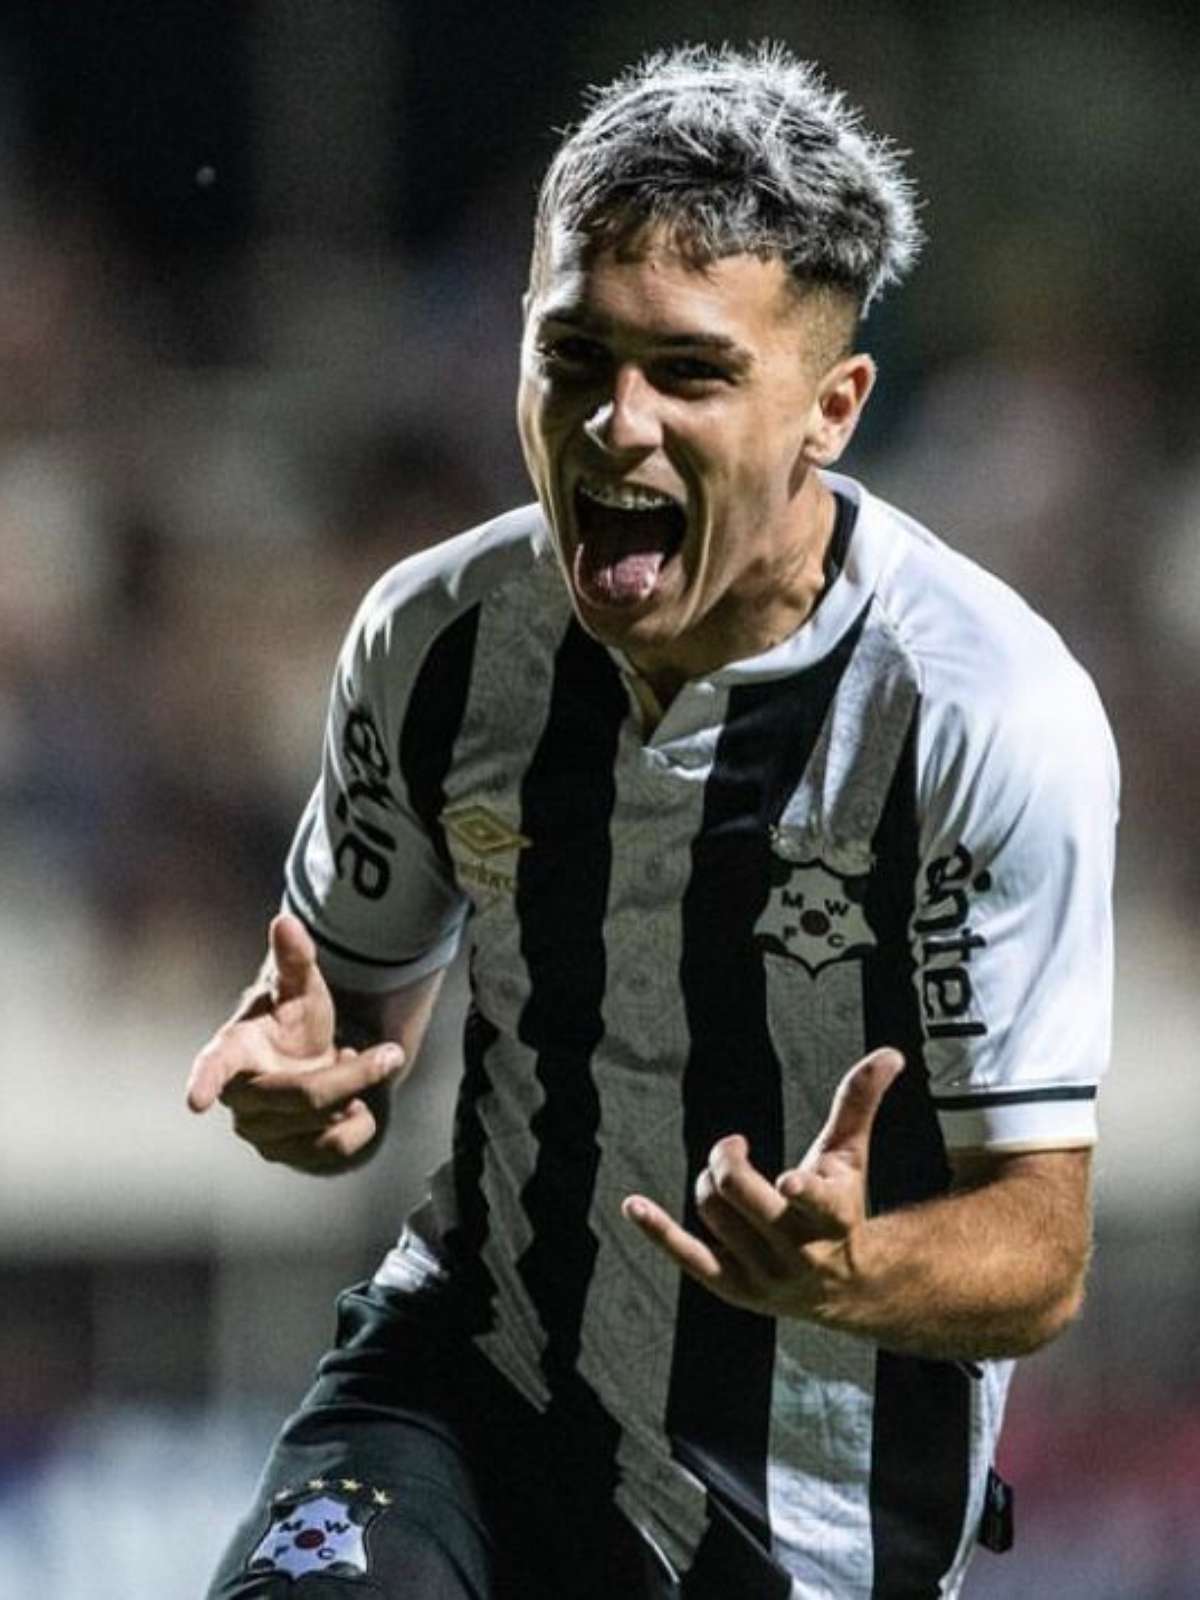 Conheça Diego Hernández, novo jogador do Botafogo